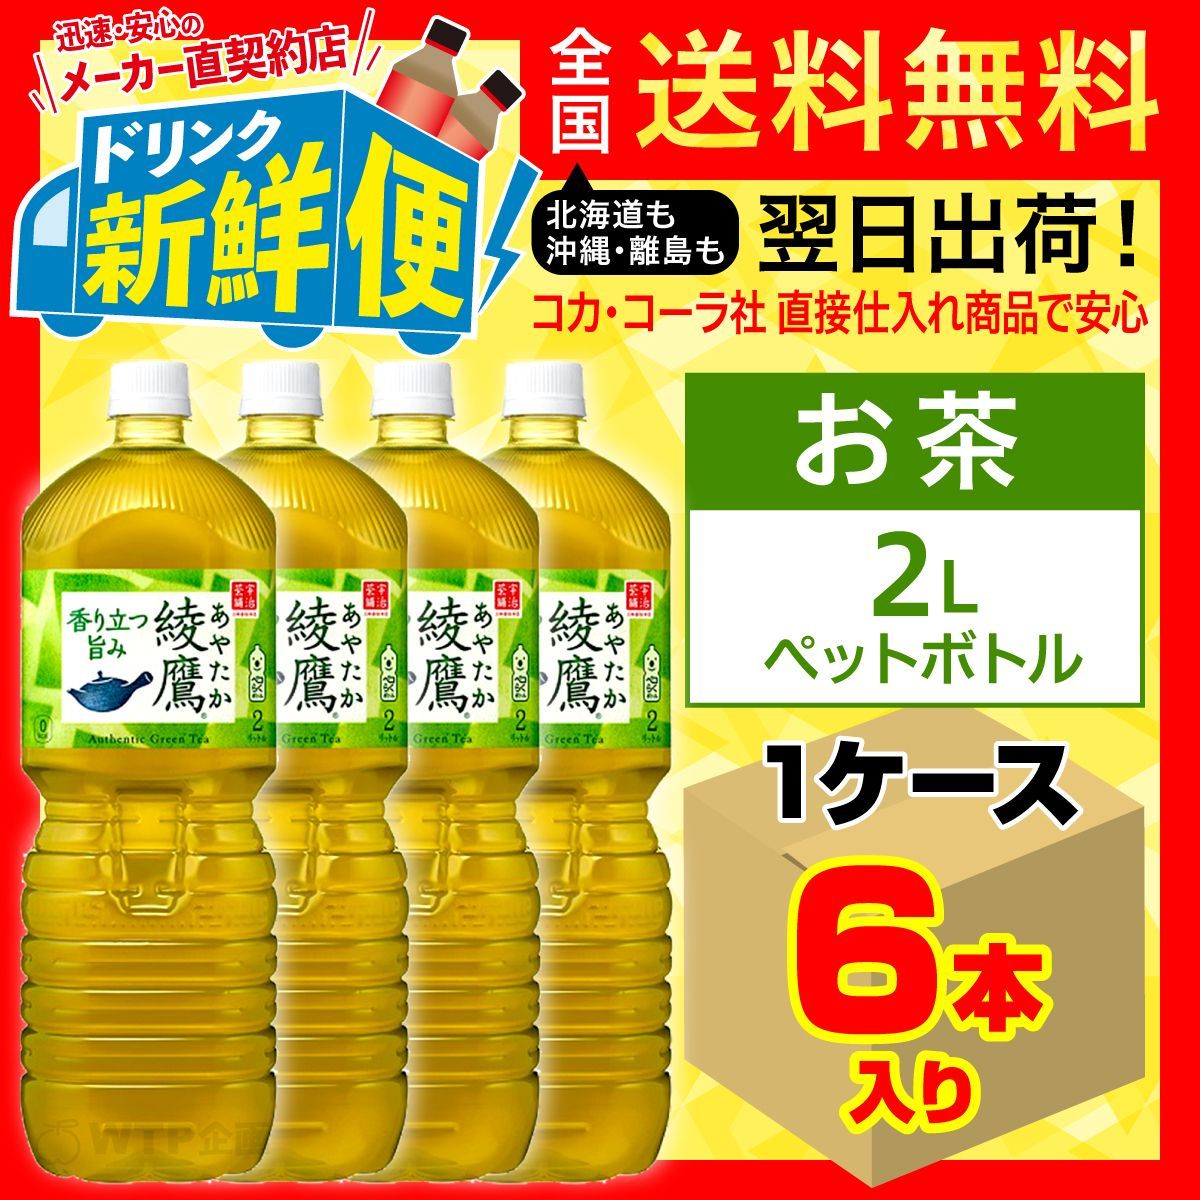 綾鷹 2L 6本入1ケース/お茶 緑茶 カテキン/112208C1